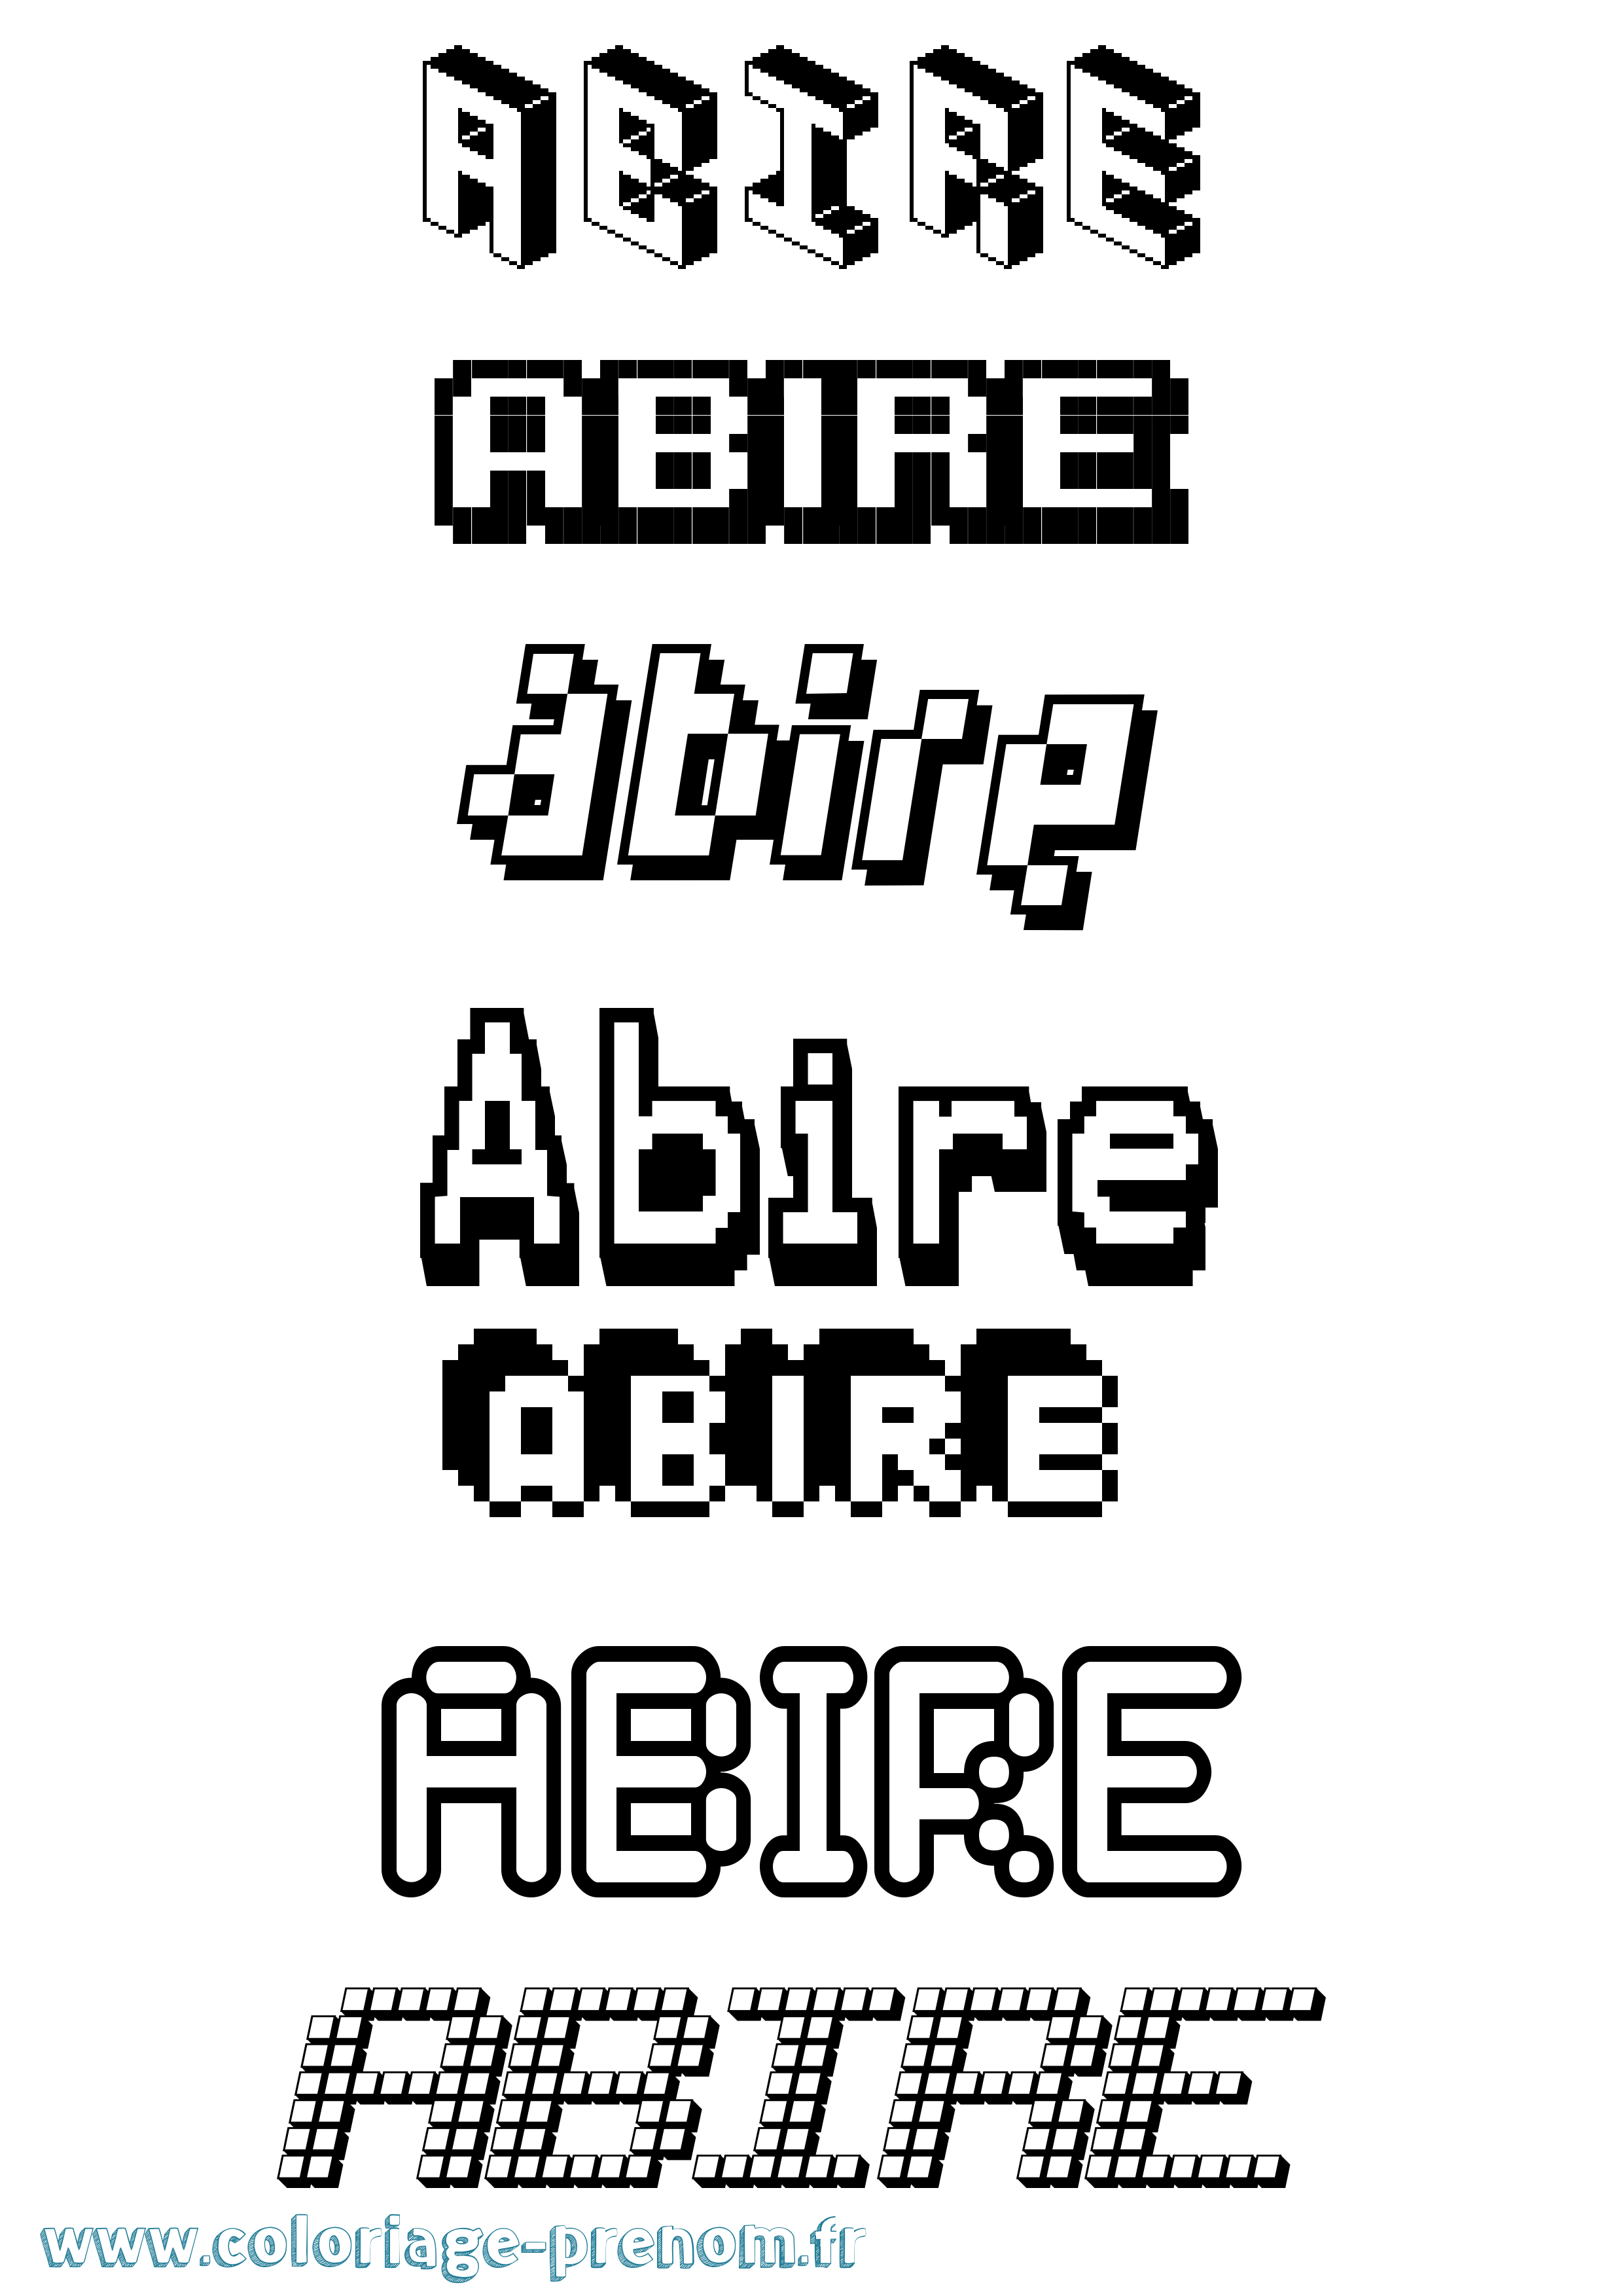 Coloriage prénom Abire Pixel